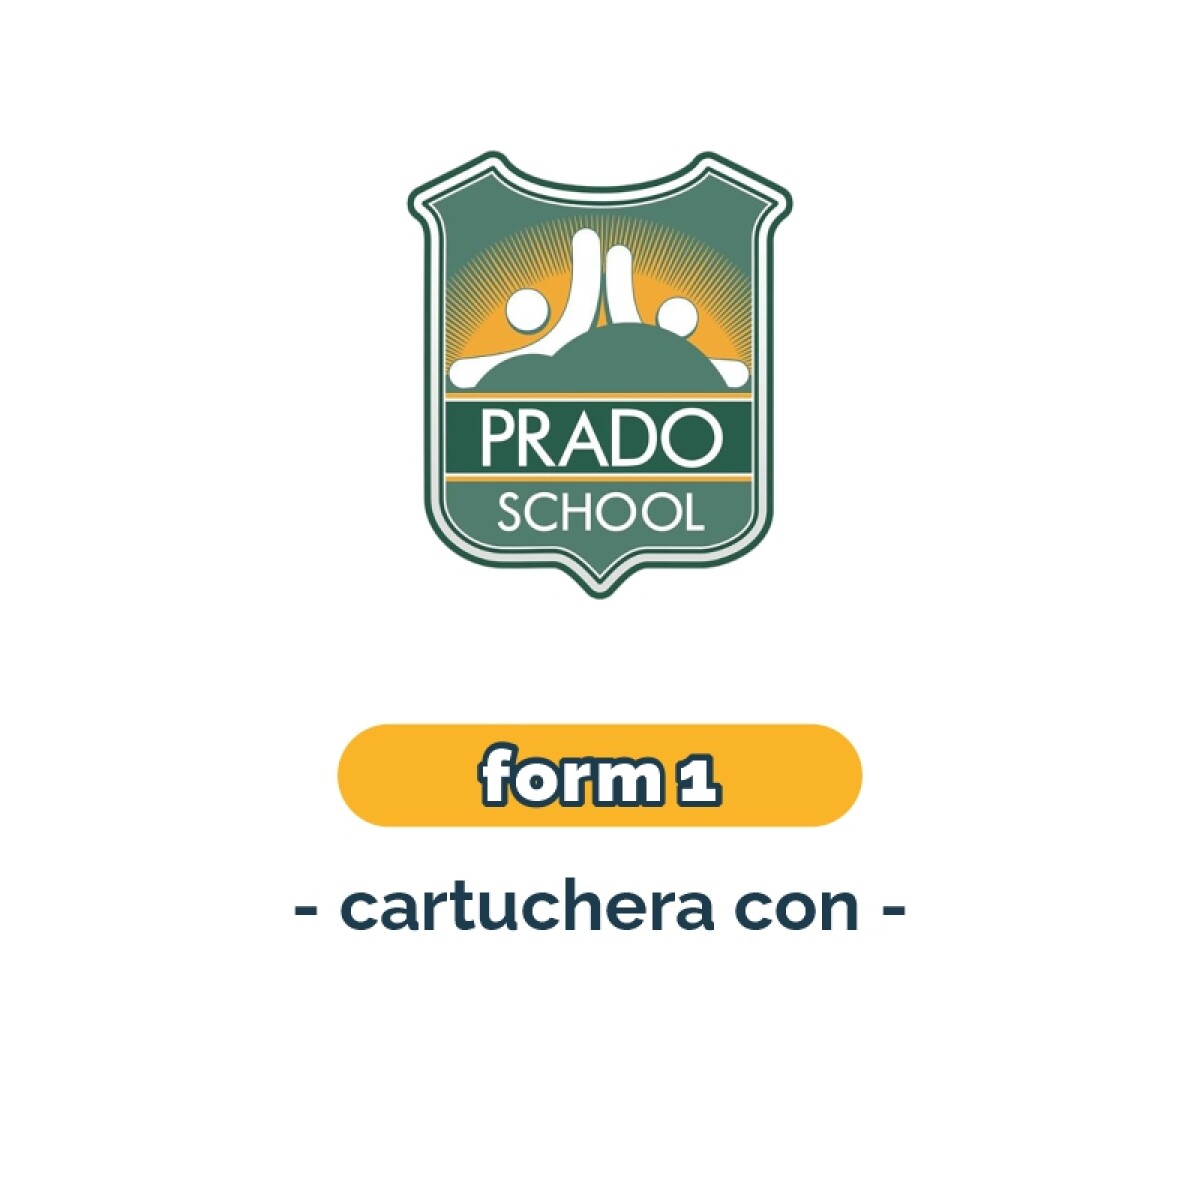 Lista de materiales - Primaria Form 1 cartuchera Prado School 